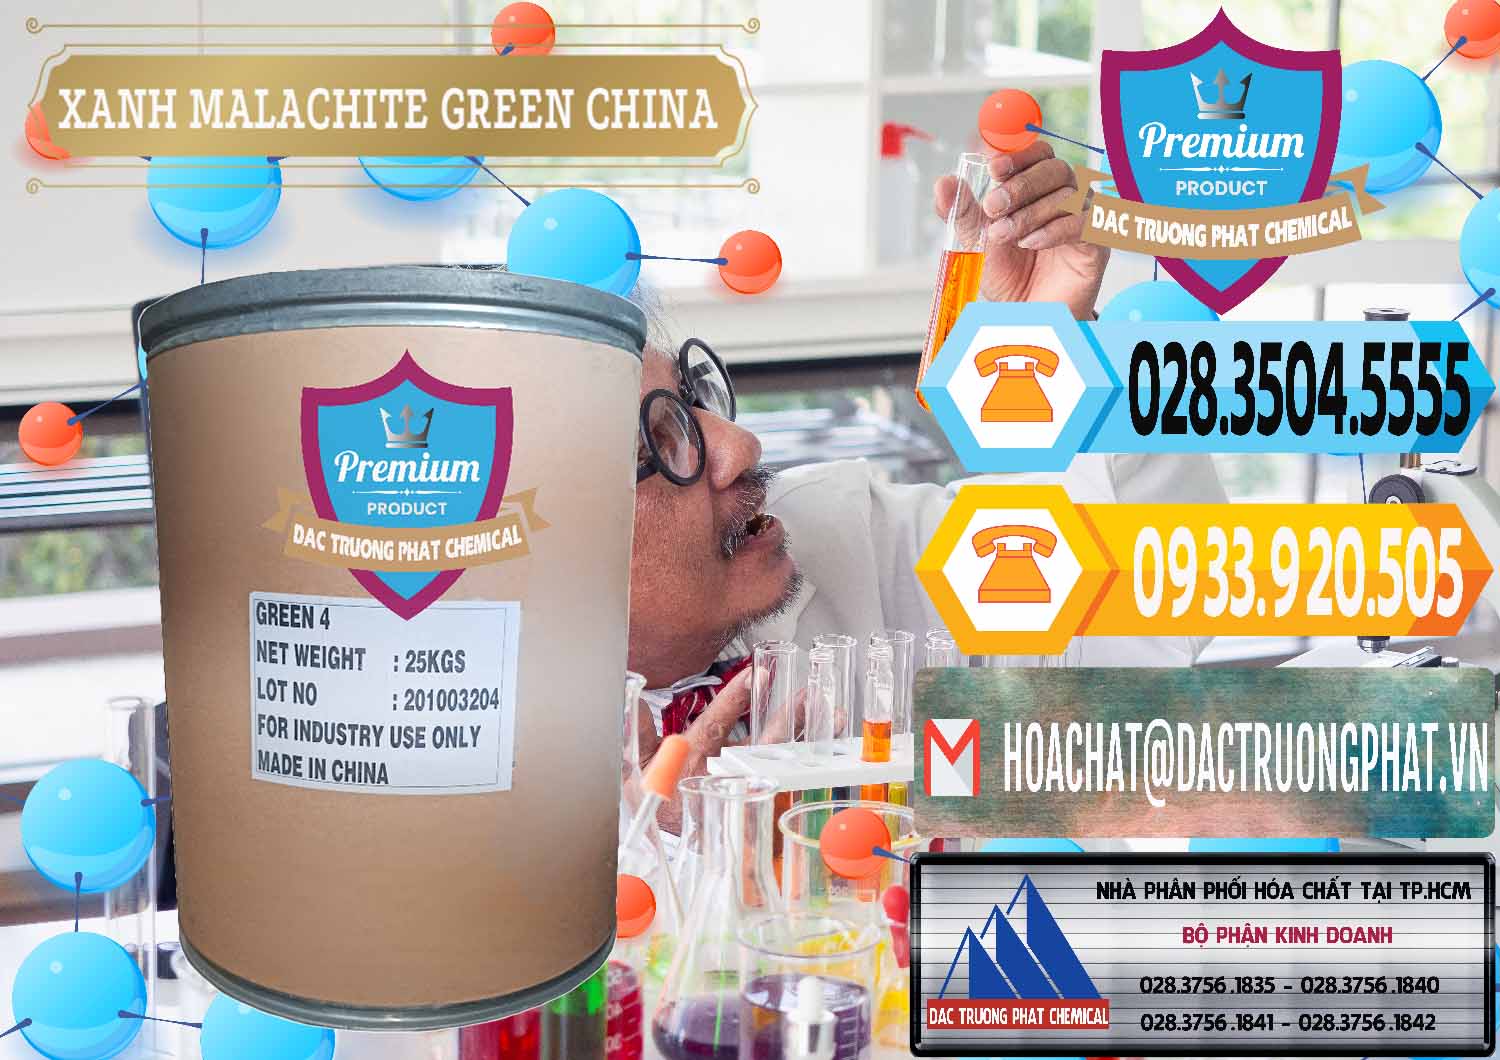 Công ty chuyên kinh doanh & bán Xanh Malachite Green Trung Quốc China - 0325 - Chuyên phân phối _ bán hóa chất tại TP.HCM - hoachattayrua.net